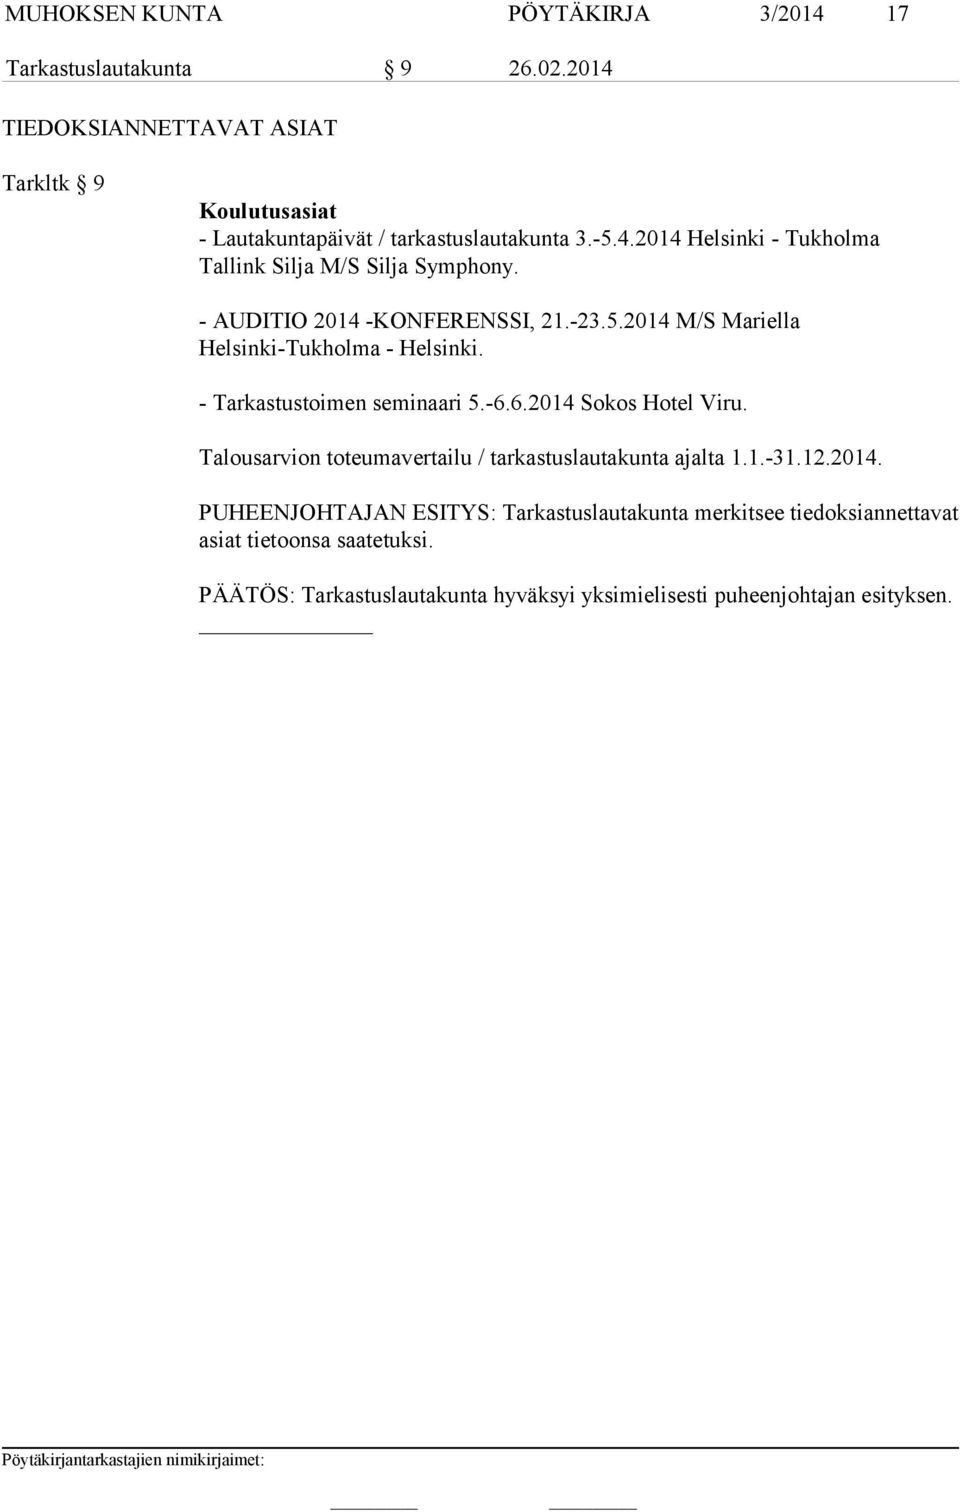 - AUDITIO 2014 -KONFERENSSI, 21.-23.5.2014 M/S Mariella Helsinki-Tukholma - Helsinki. - Tarkastustoimen seminaari 5.-6.6.2014 Sokos Hotel Viru.